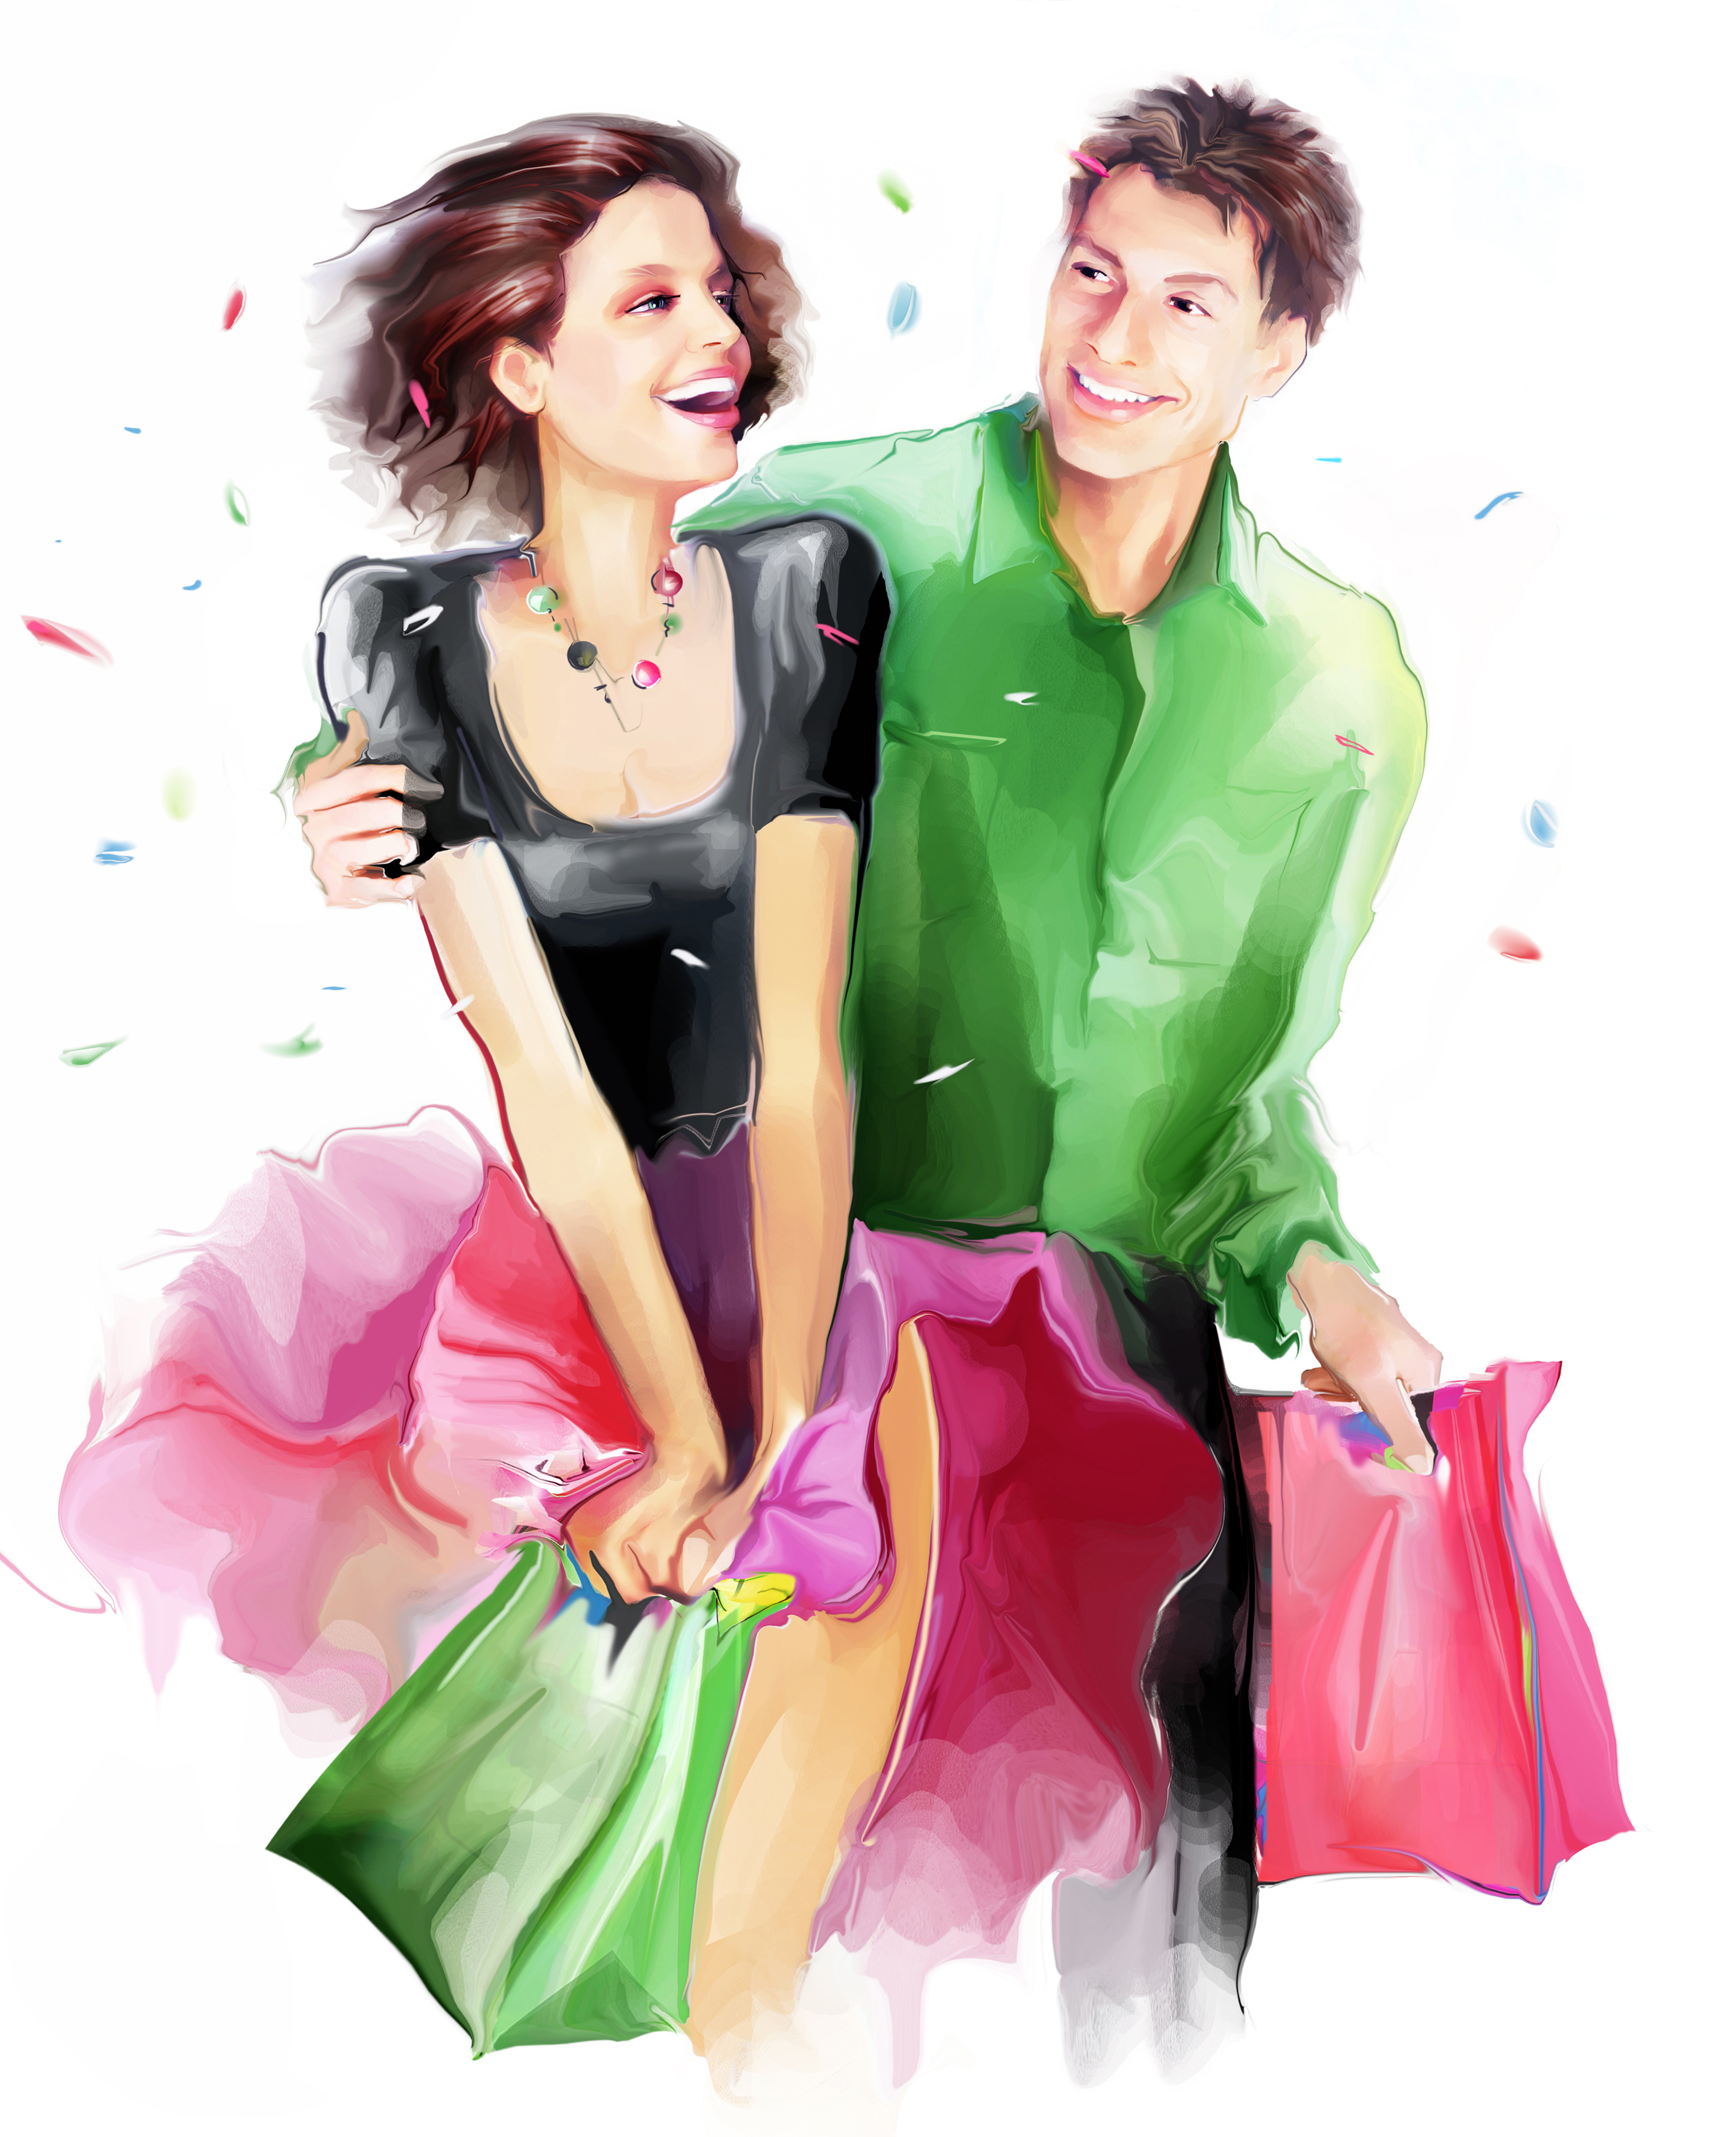 Man woman shop. Мужчина и женщинарисуно. Мужчина и женщина с покупками. Девушка. Одежда мужская и женская иллюстрации.